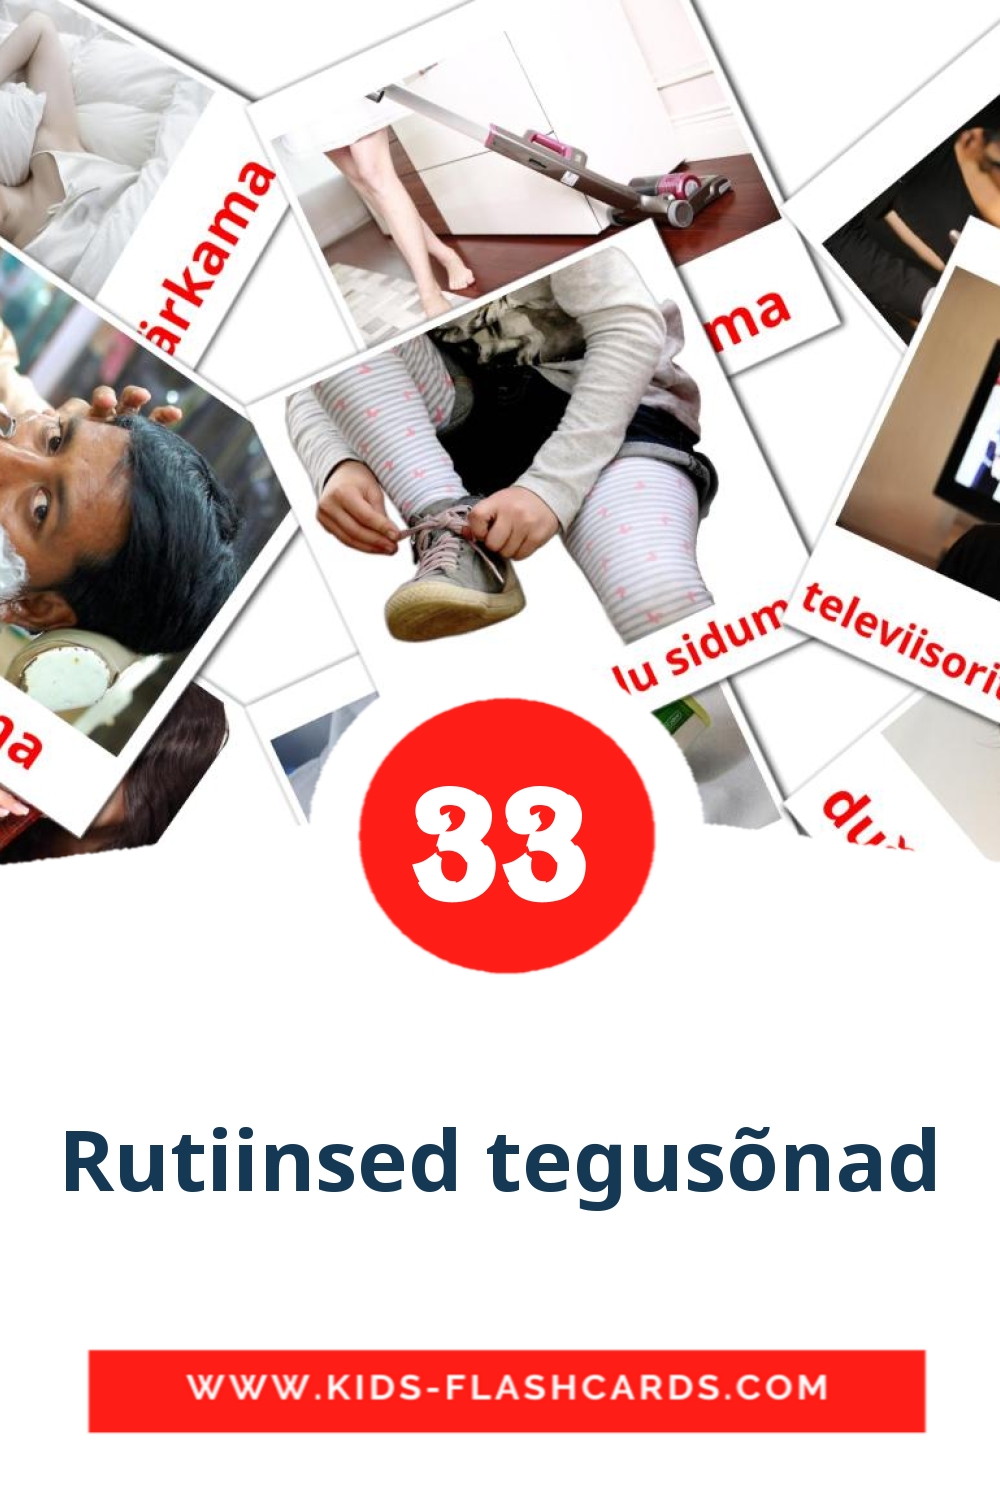 33 Rutiinsed tegusõnad fotokaarten voor kleuters in het estlands